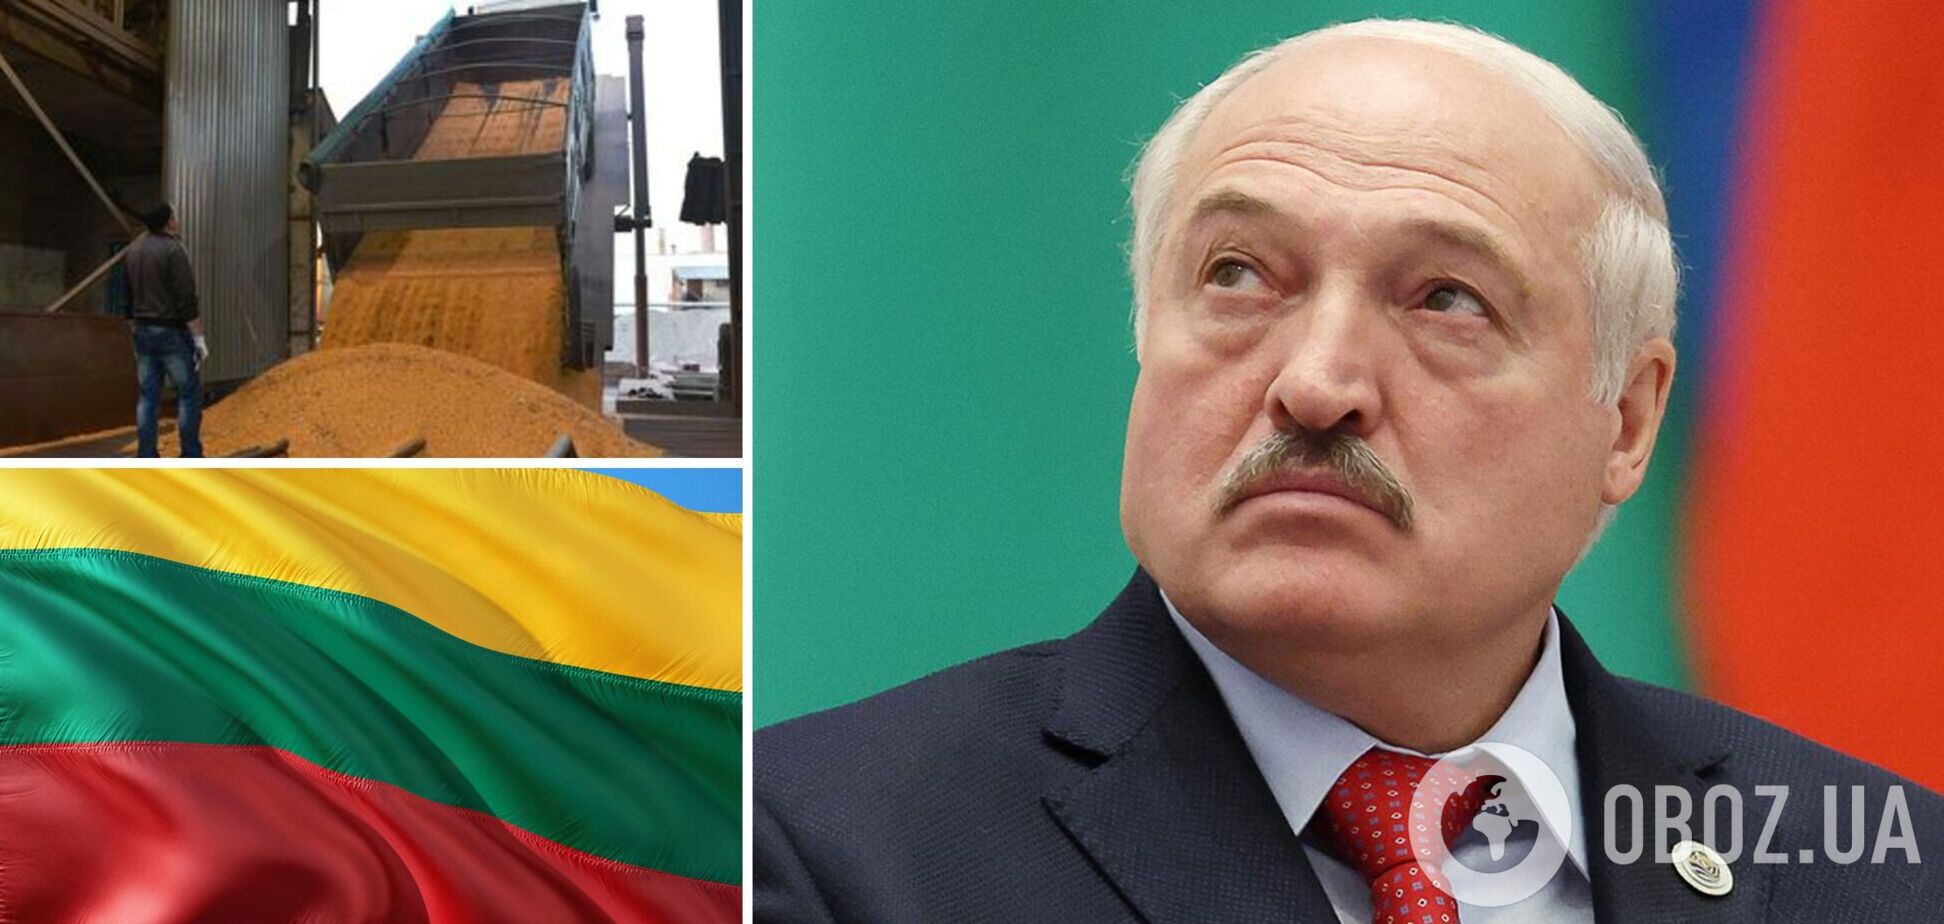 Білорусь без попередніх умов погодилась транспортувати українське зерно в литовські порти – Reuters